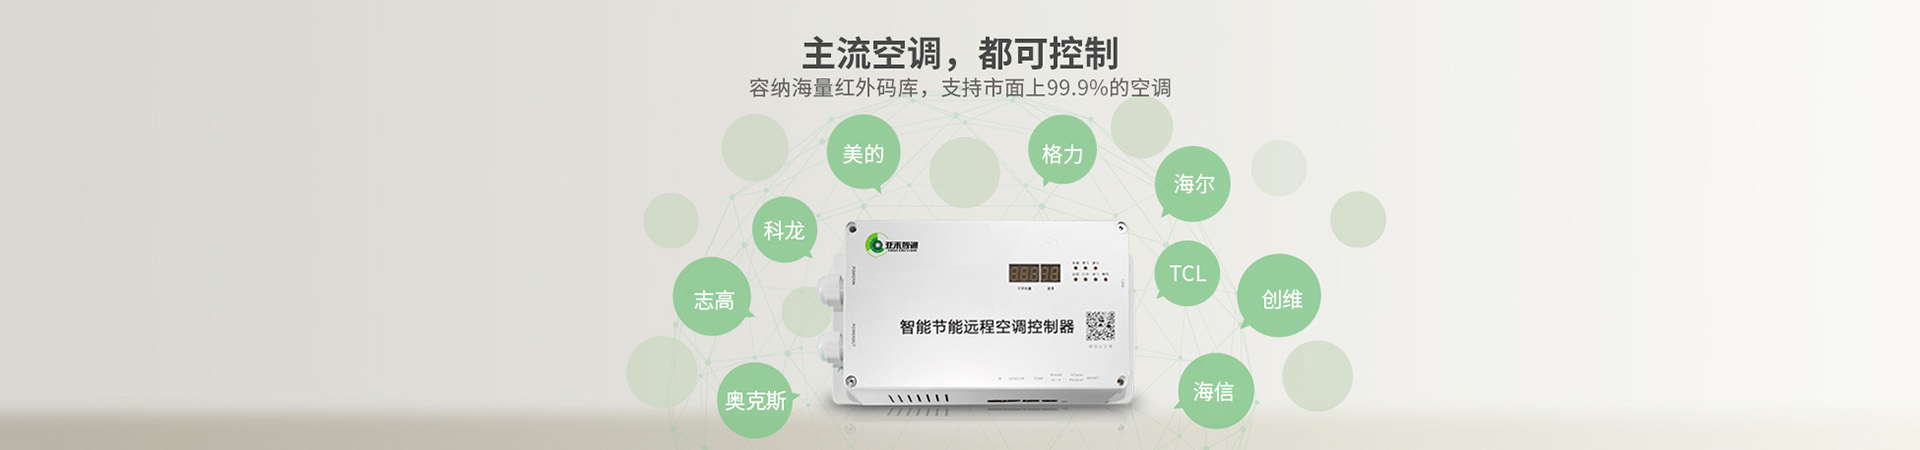 广州禺山中学正式运用派谷教室空调智能控制系统